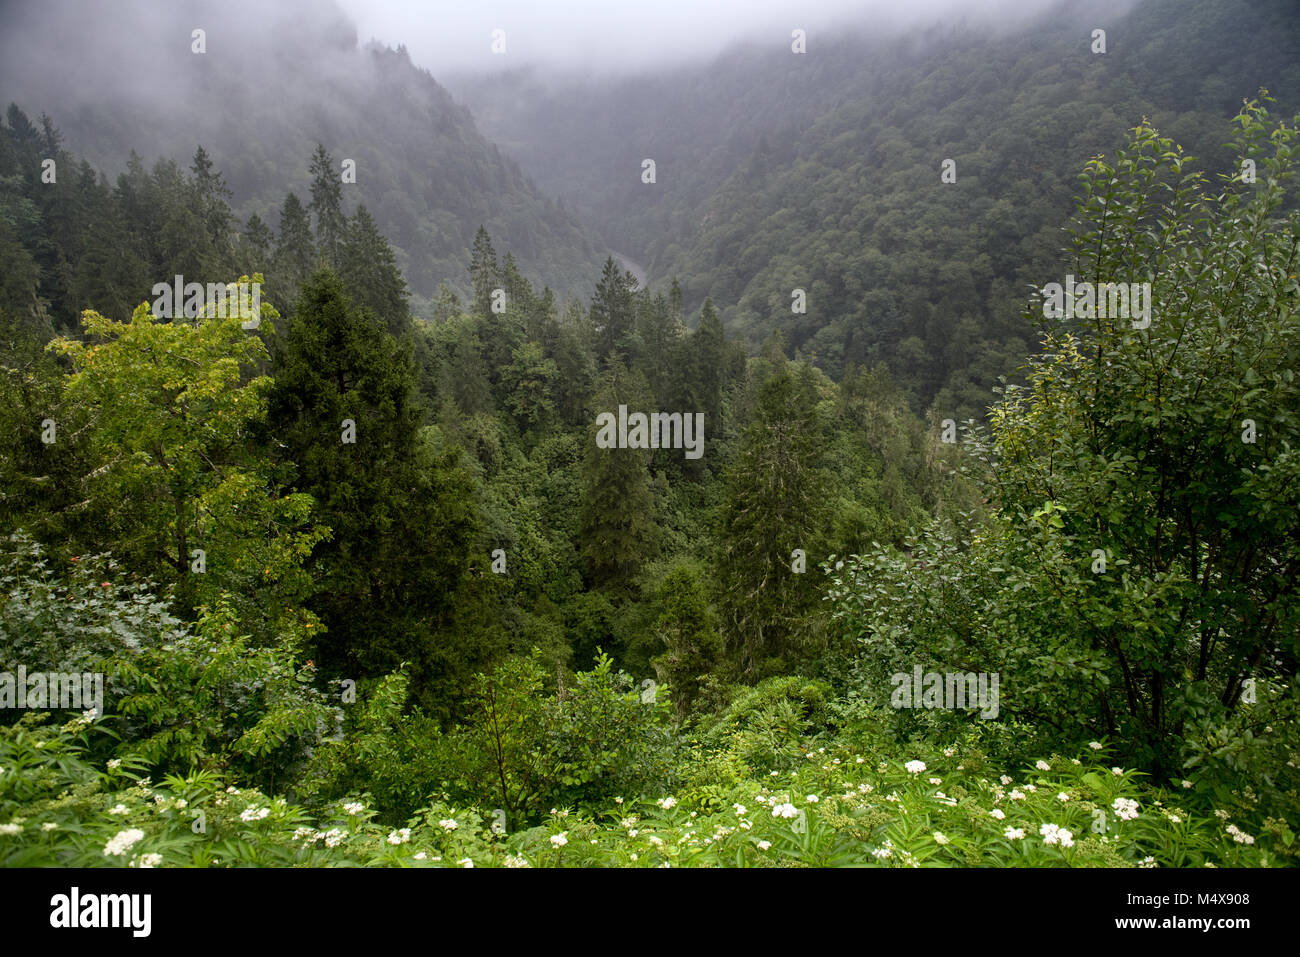 La forêt pluvieuse de parc national Kackar sont situés dans Camlihemsin, Rize, Turquie Banque D'Images